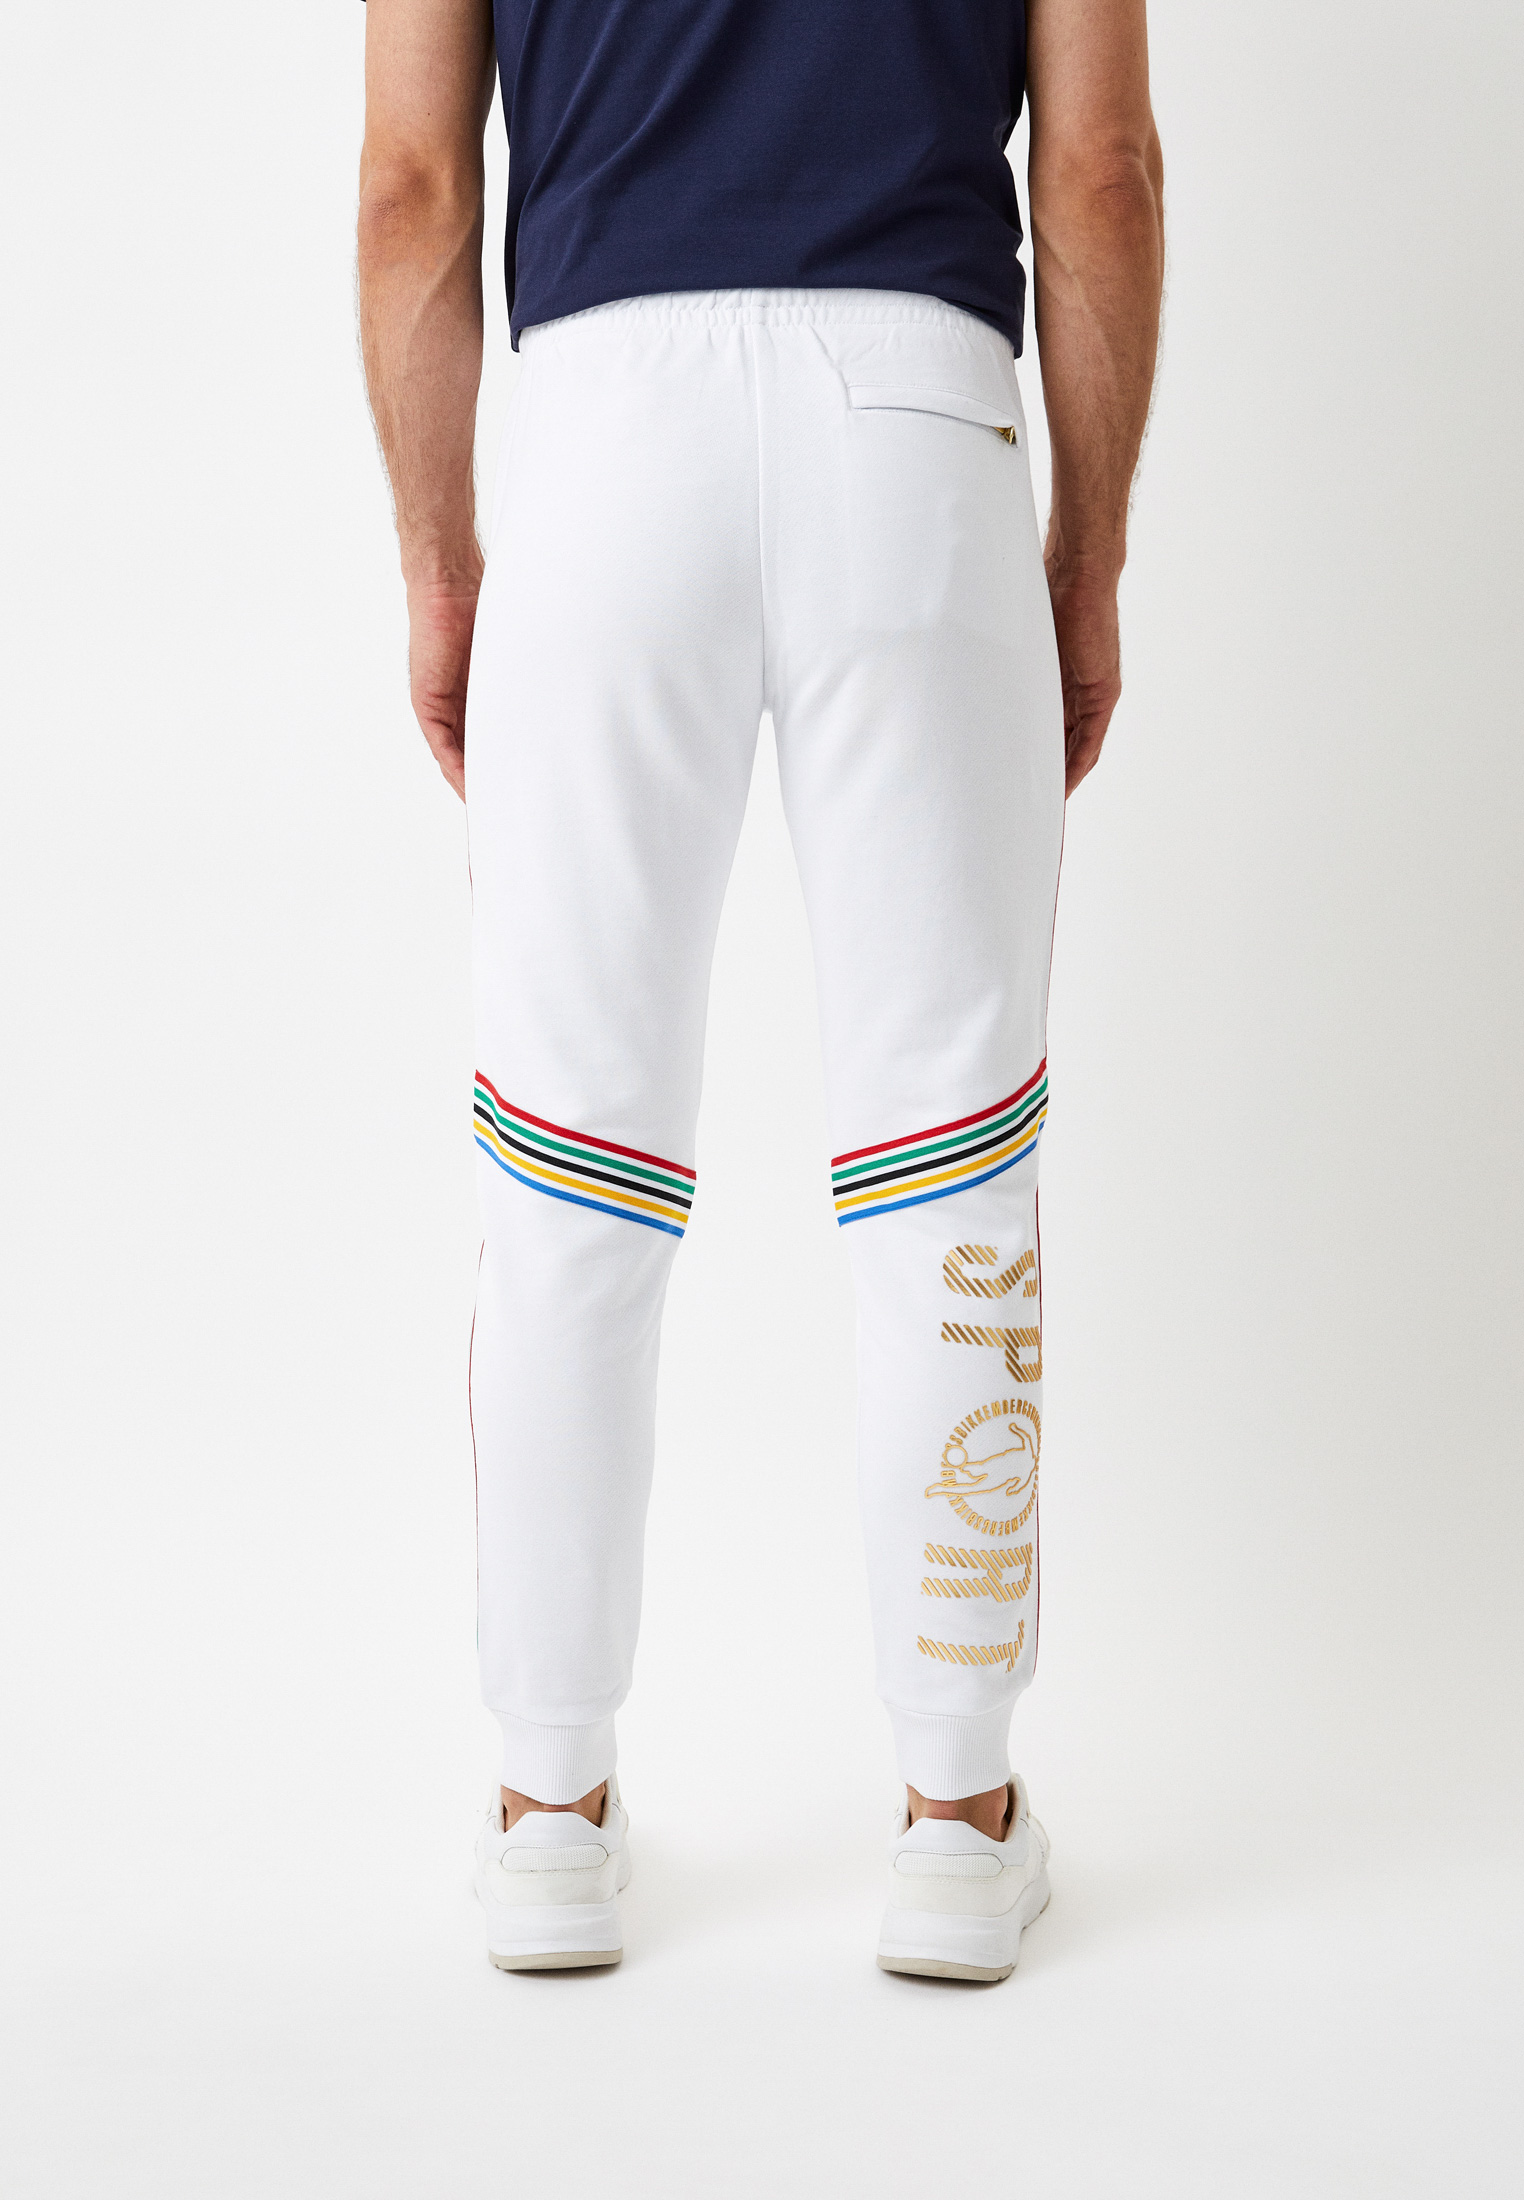 Мужские спортивные брюки Bikkembergs (Биккембергс) C 1 135 4P M 4199: изображение 3